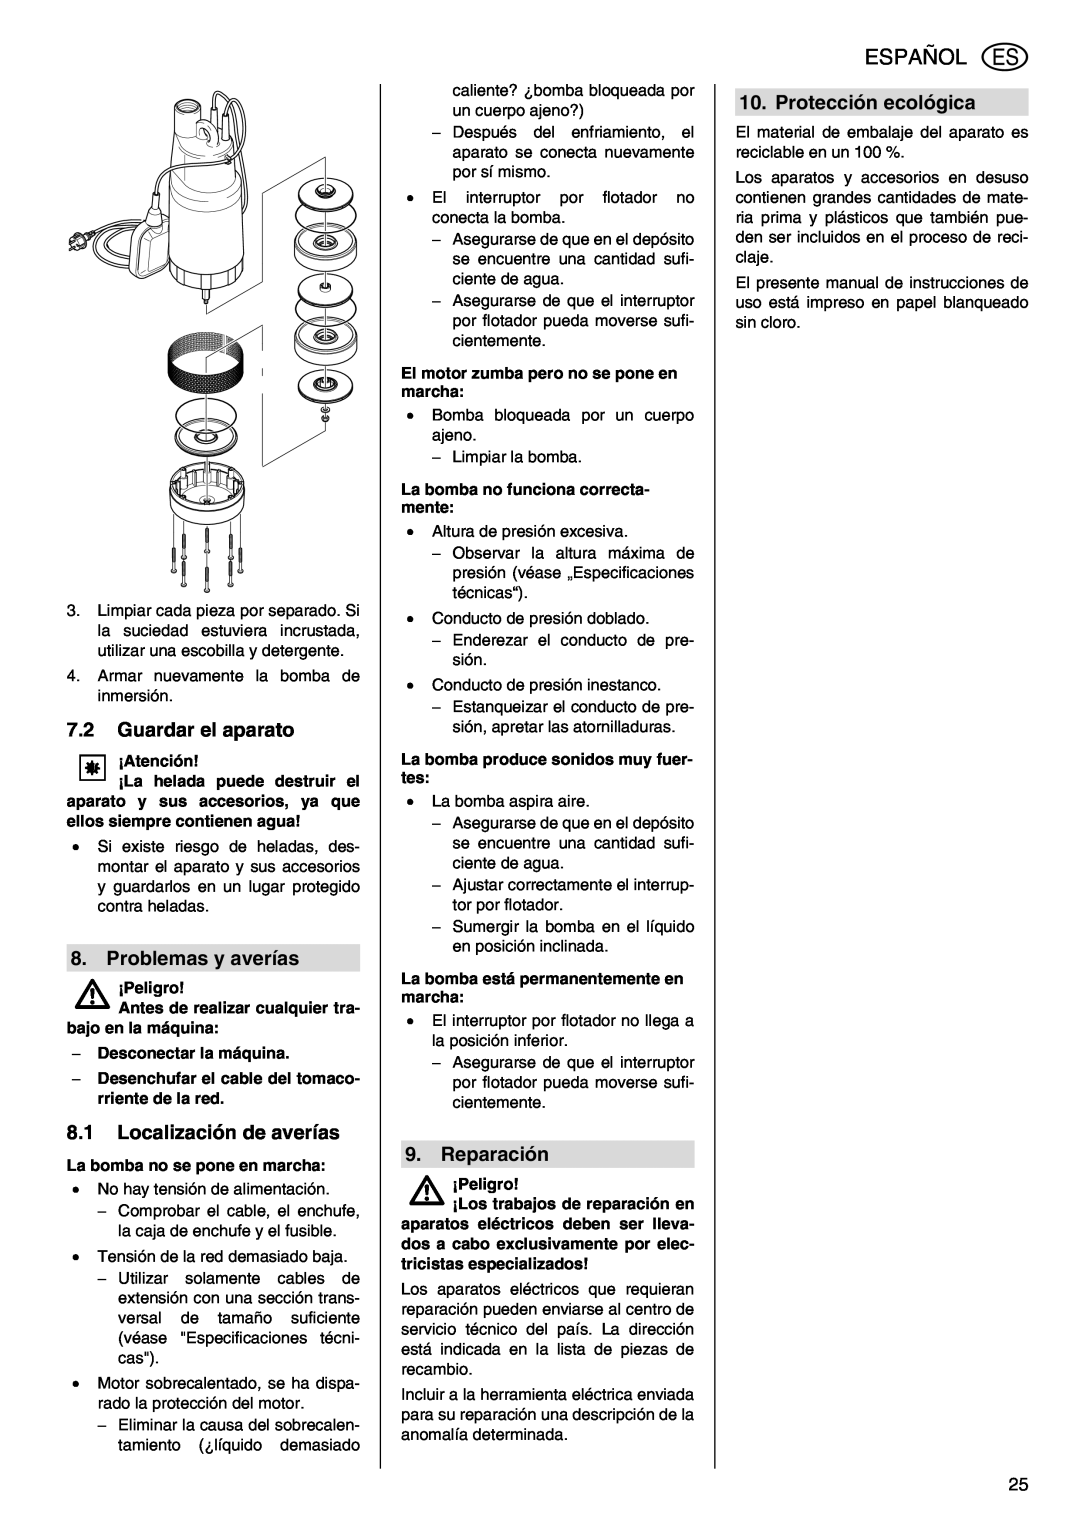 Metabo TDP 7500 S manual Español, 7.2Guardar el aparato, Problemas y averías, 8.1Localización de averías, Reparación 